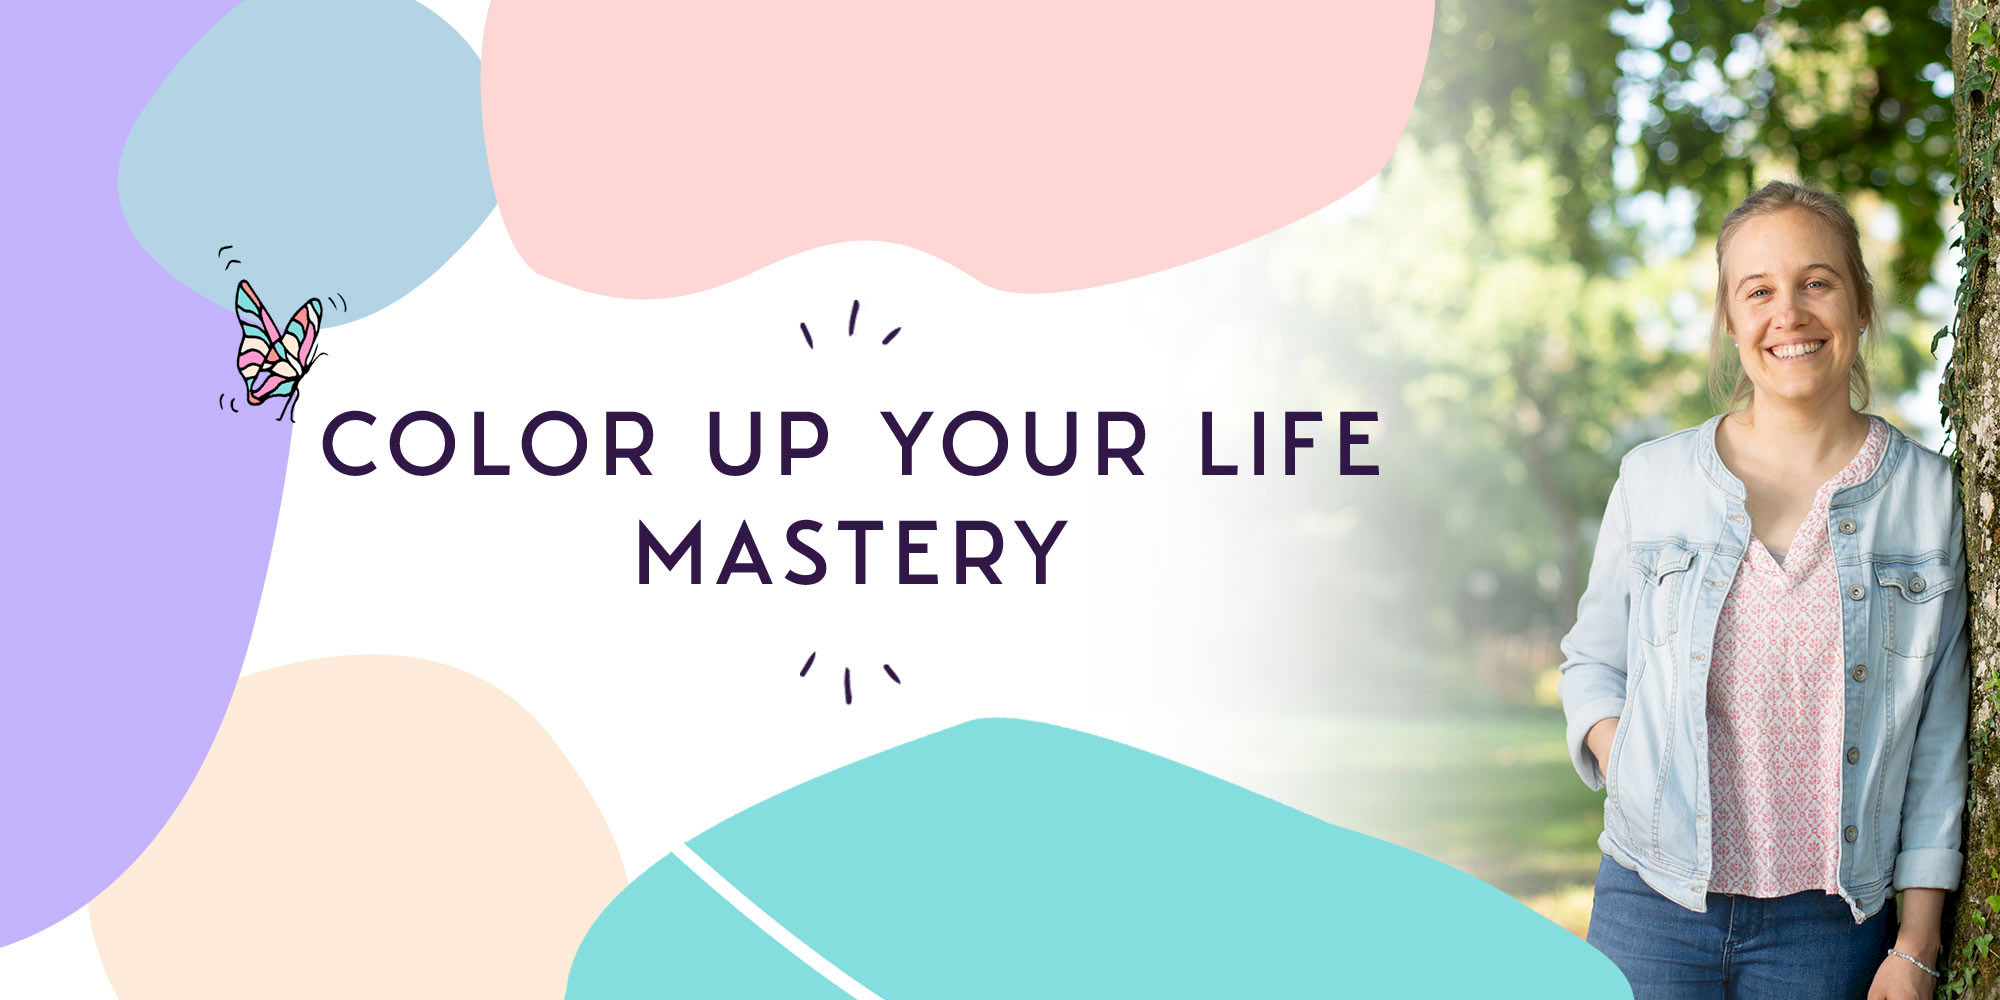 Color Up Your Life Mastery Titelbild mit Melanie Bütikofer, angelehnt an einem Baum. Es ist sonnige und das Bild wird von farbigen Formen umrandet, auf denen ein Schmetterling fliegt.